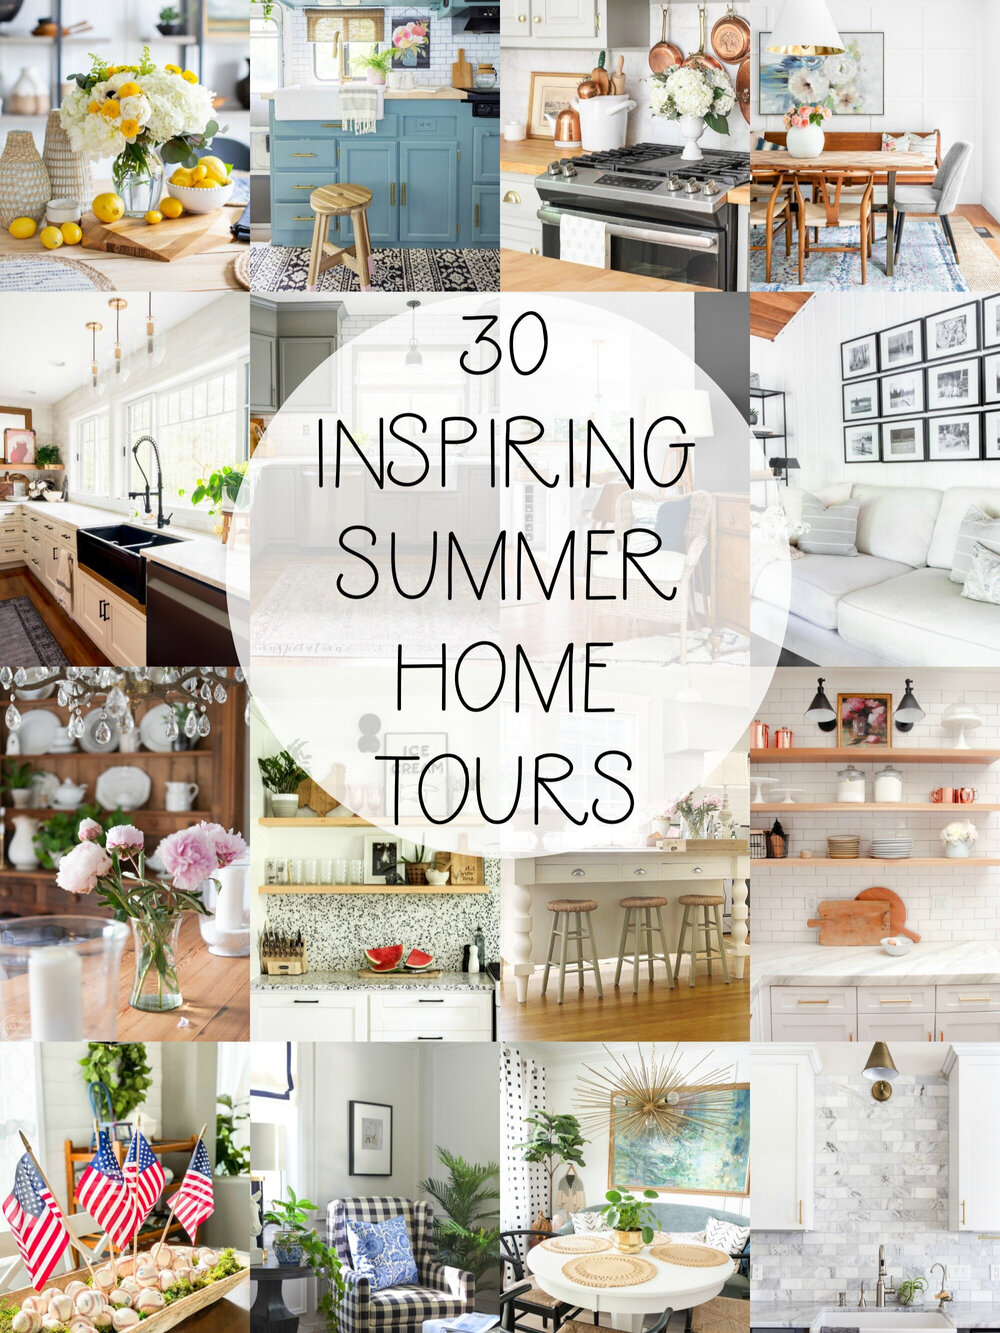 30+inspiring+summer+home+tours+Seasonal+Simplicity+Summer+Home+Tour+Series.jpg